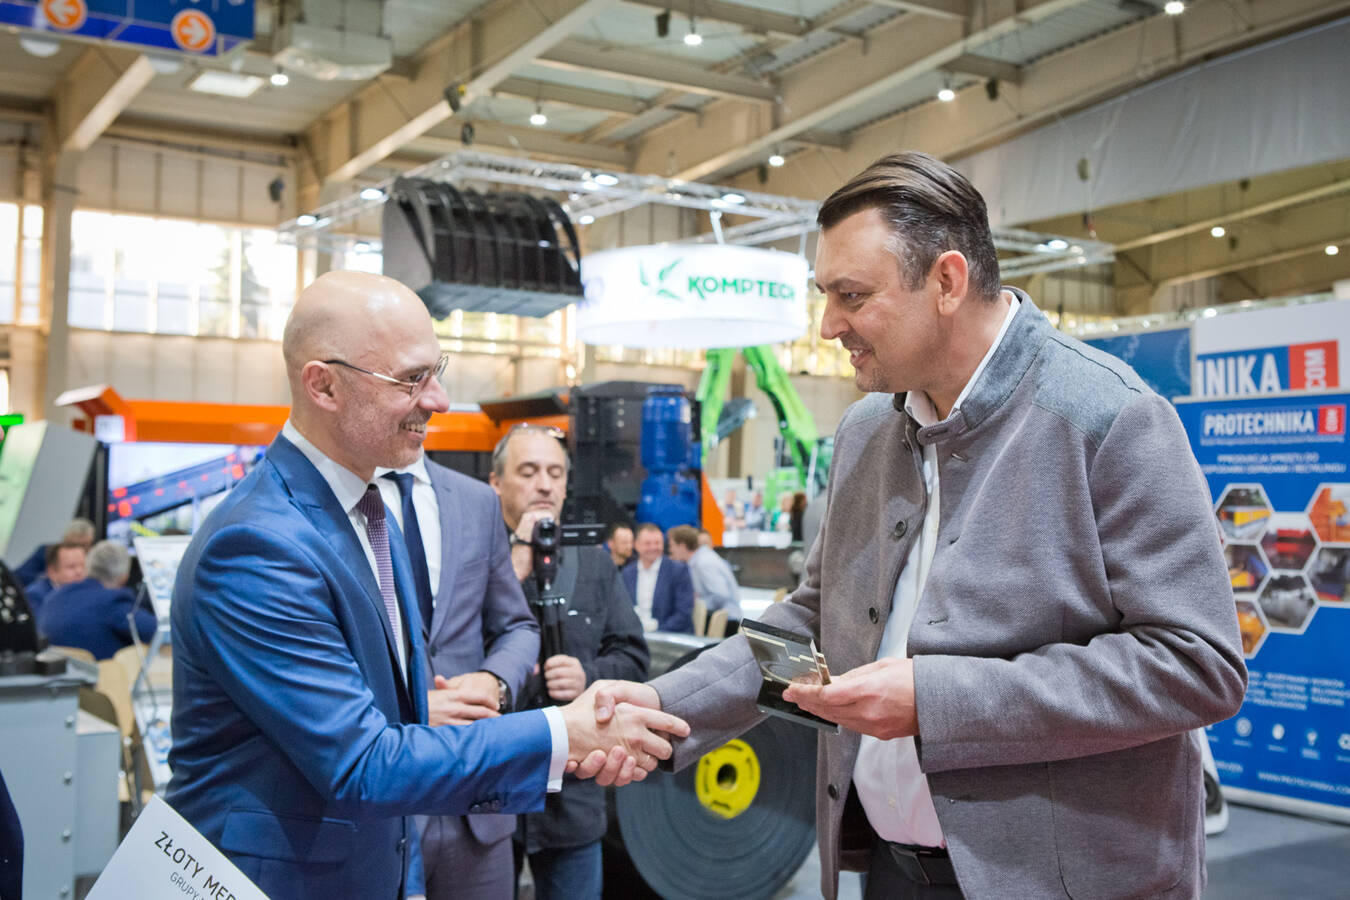 Darek Mainka, Vertriebsleiter für Umwelttechnologie bei HSM Polska, nahm den Preis im Namen von HSM entgegen